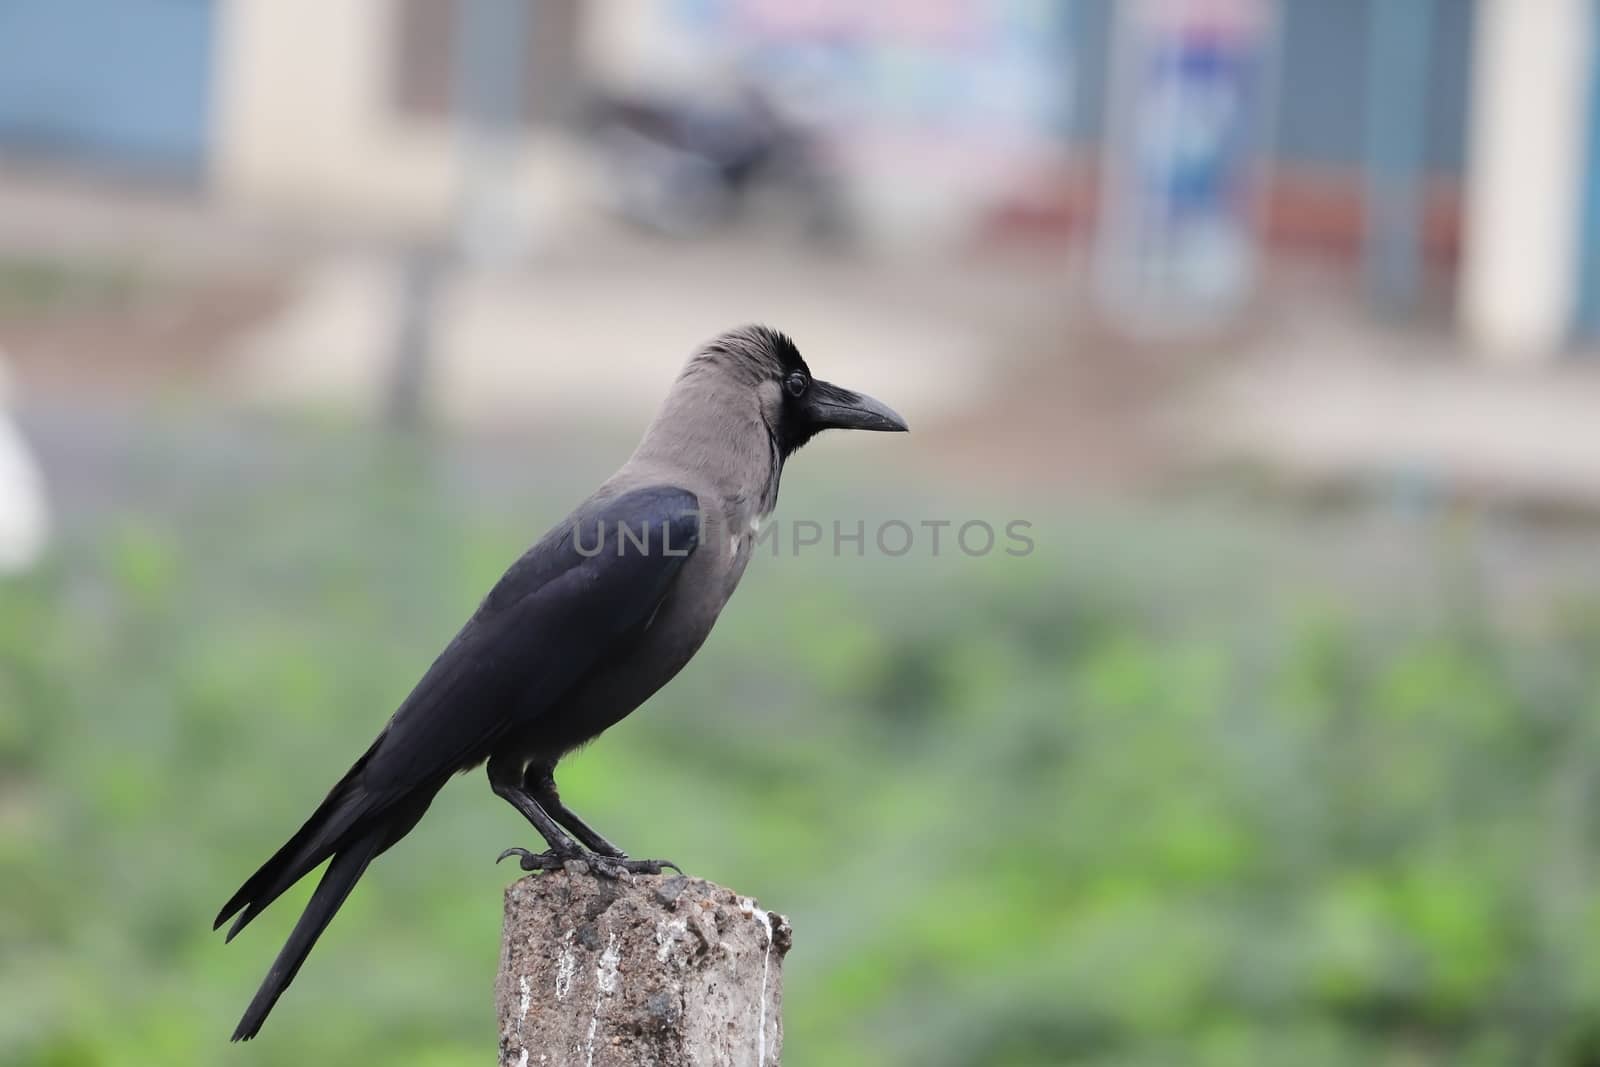 A house crow , bird by 9500102400